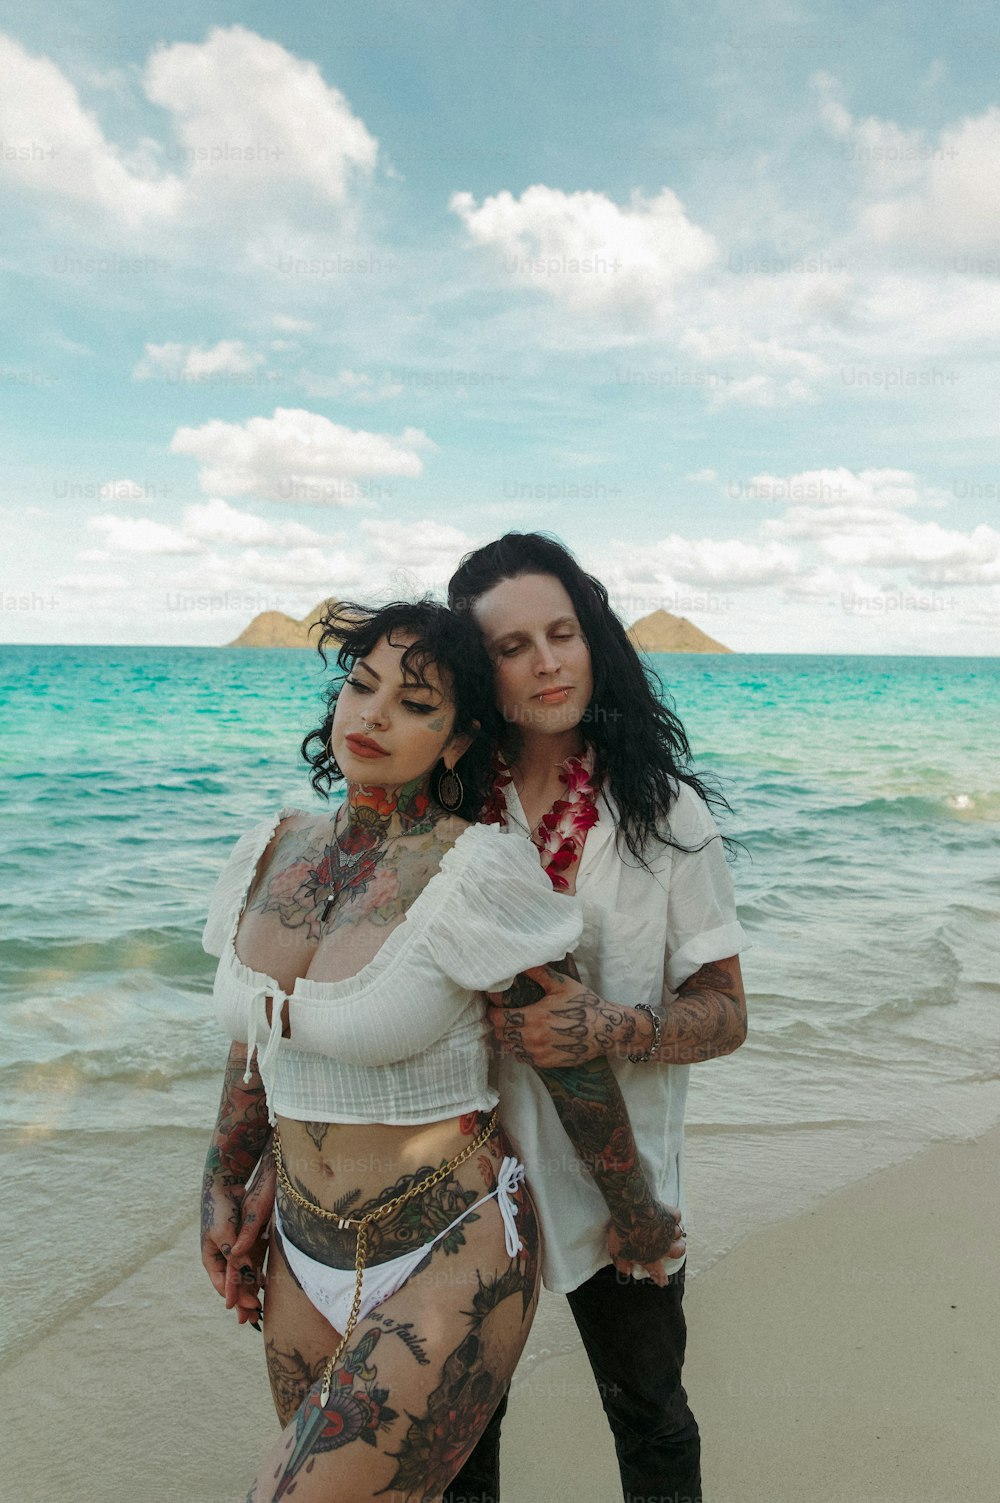 Un par de mujeres de pie una al lado de la otra en una playa